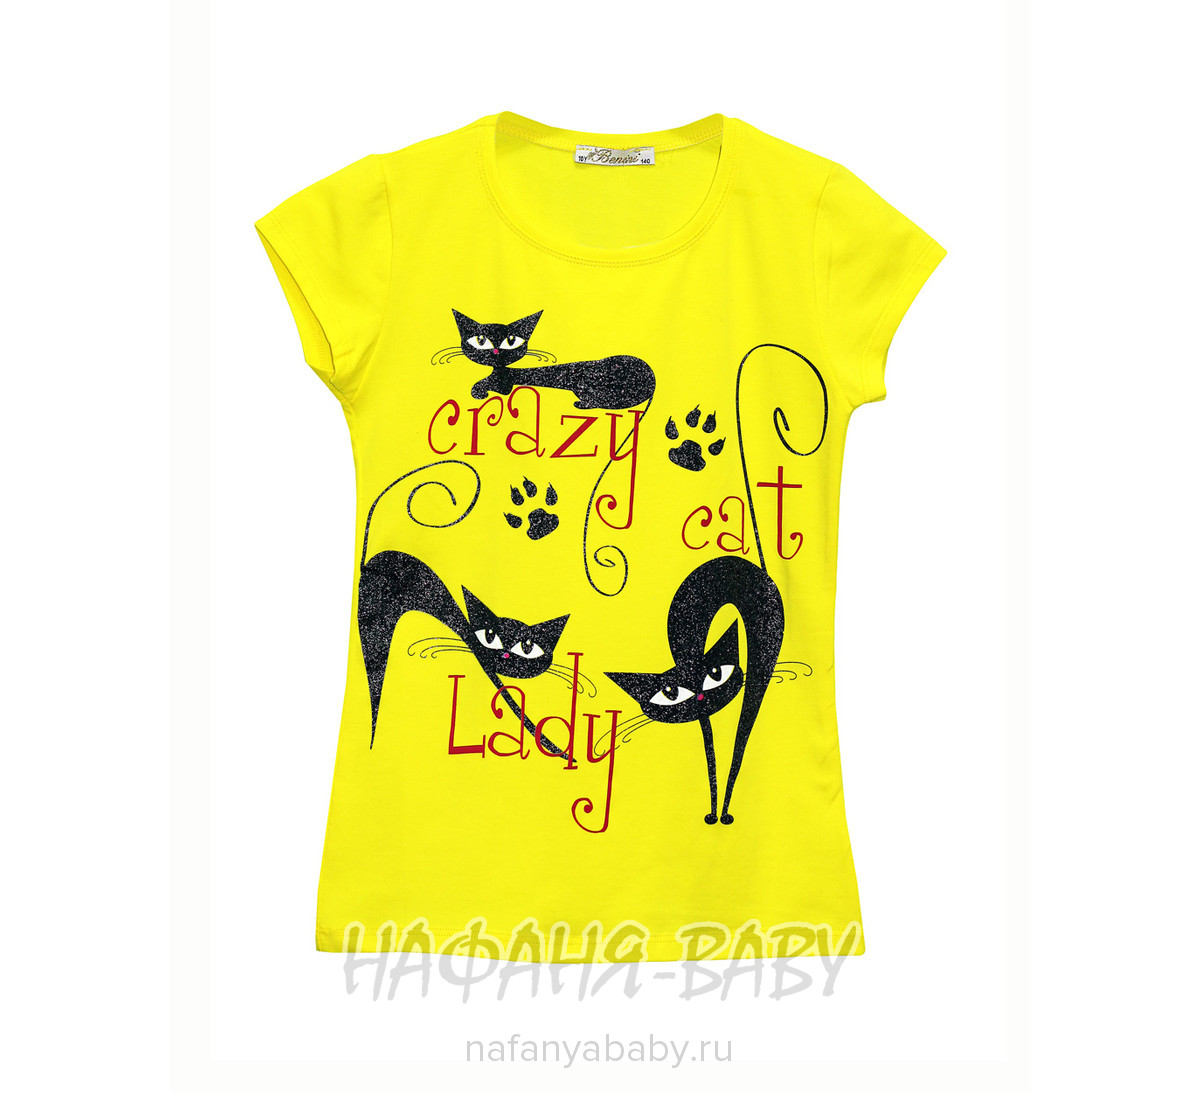 Детская футболка, артикул 7213 BENINI арт: 7213, цвет желтый, оптом Турция